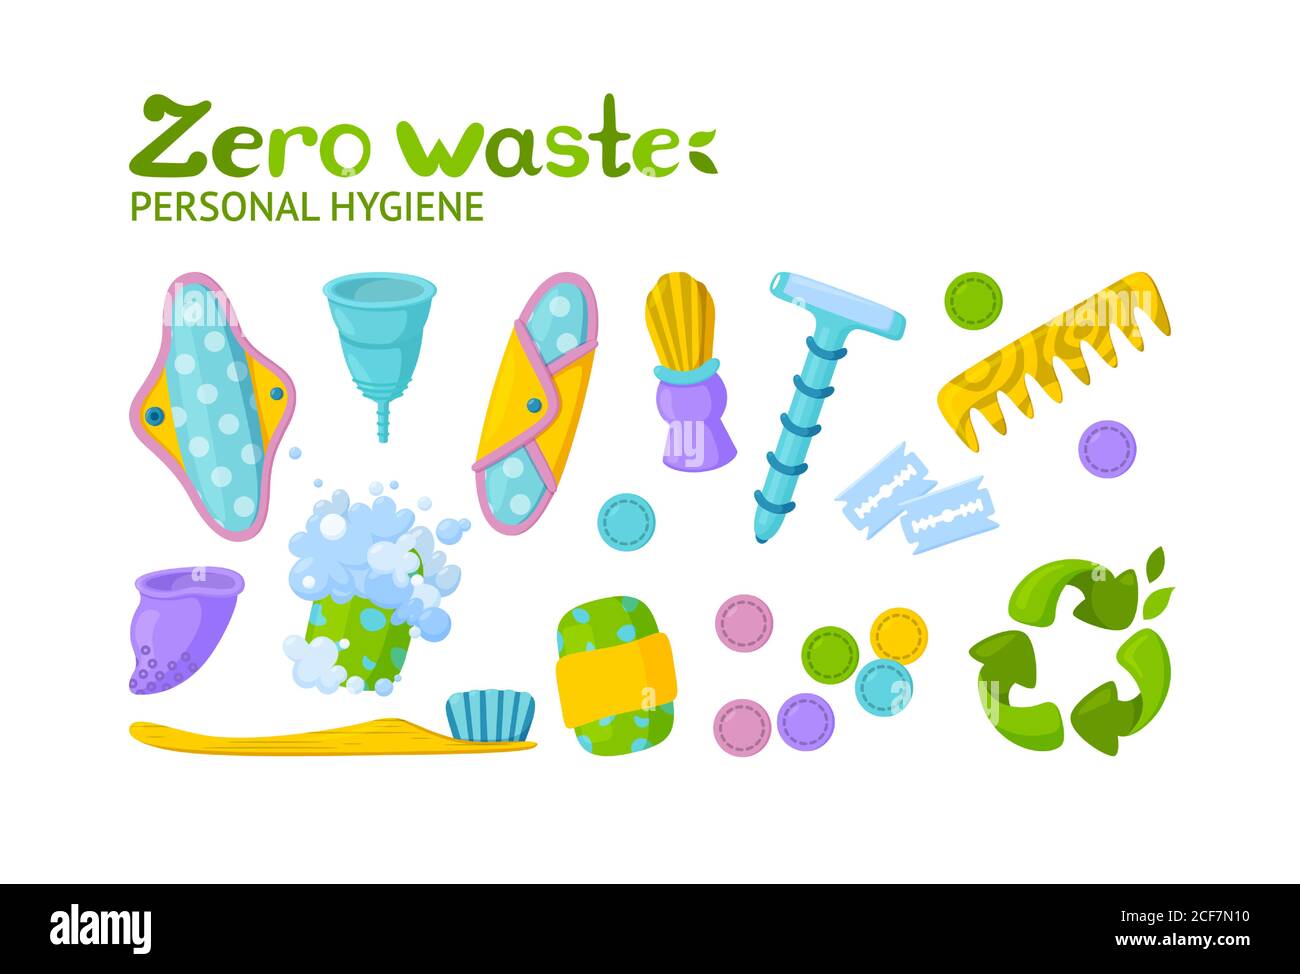 Higiene personal sin residuos. Símbolo de reciclaje y artículos reutilizables. Ilustración vectorial en estilo de dibujos animados Ilustración del Vector